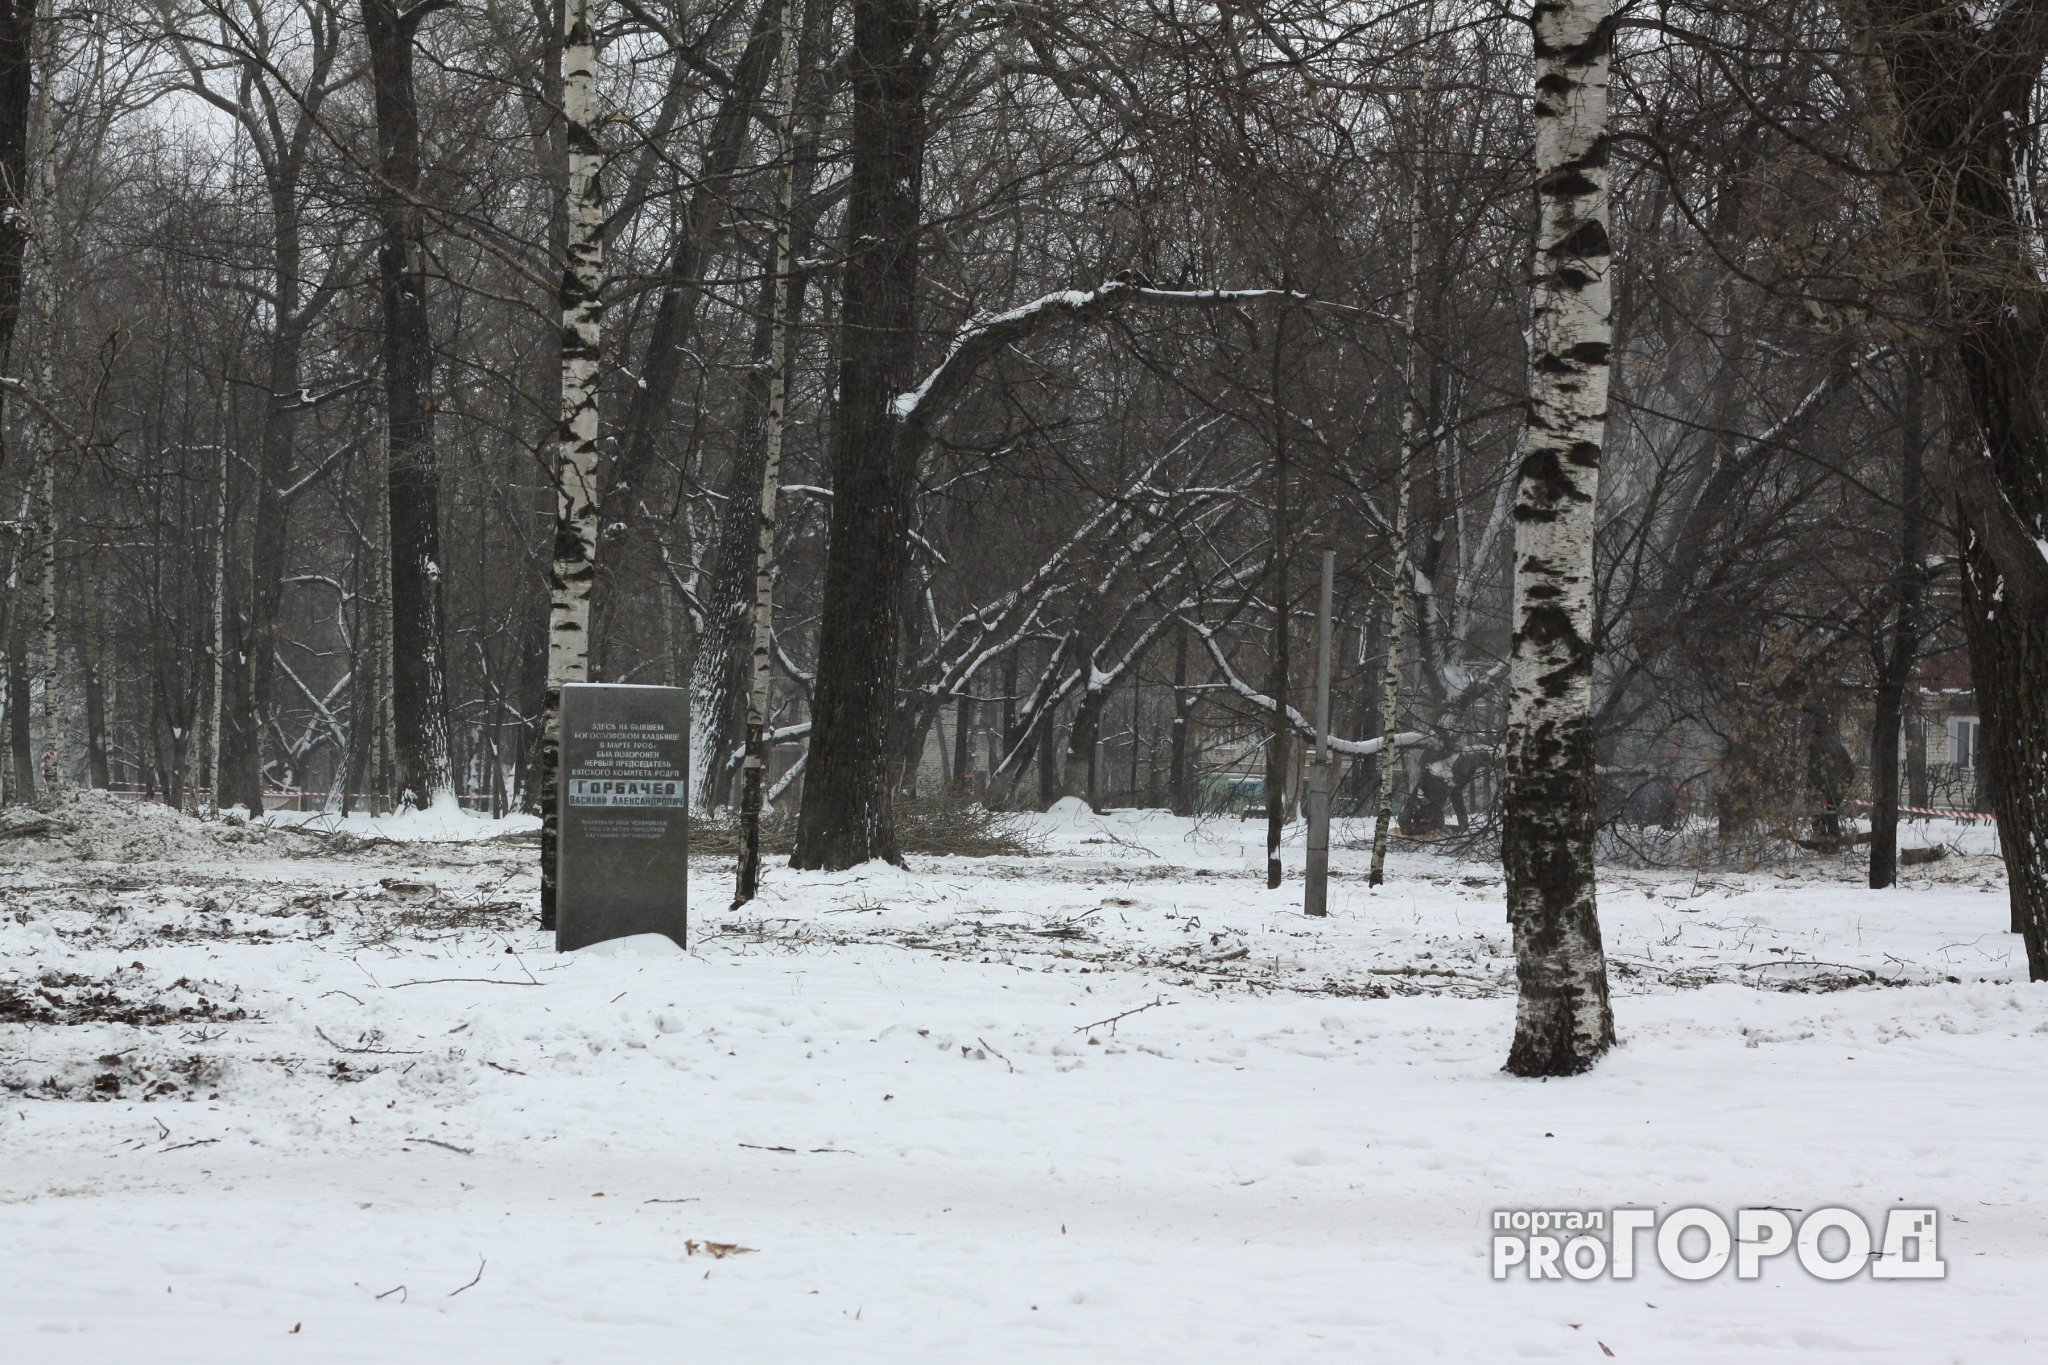 Коротко о погоде: Ярославль ждет снег и плюсовая температура